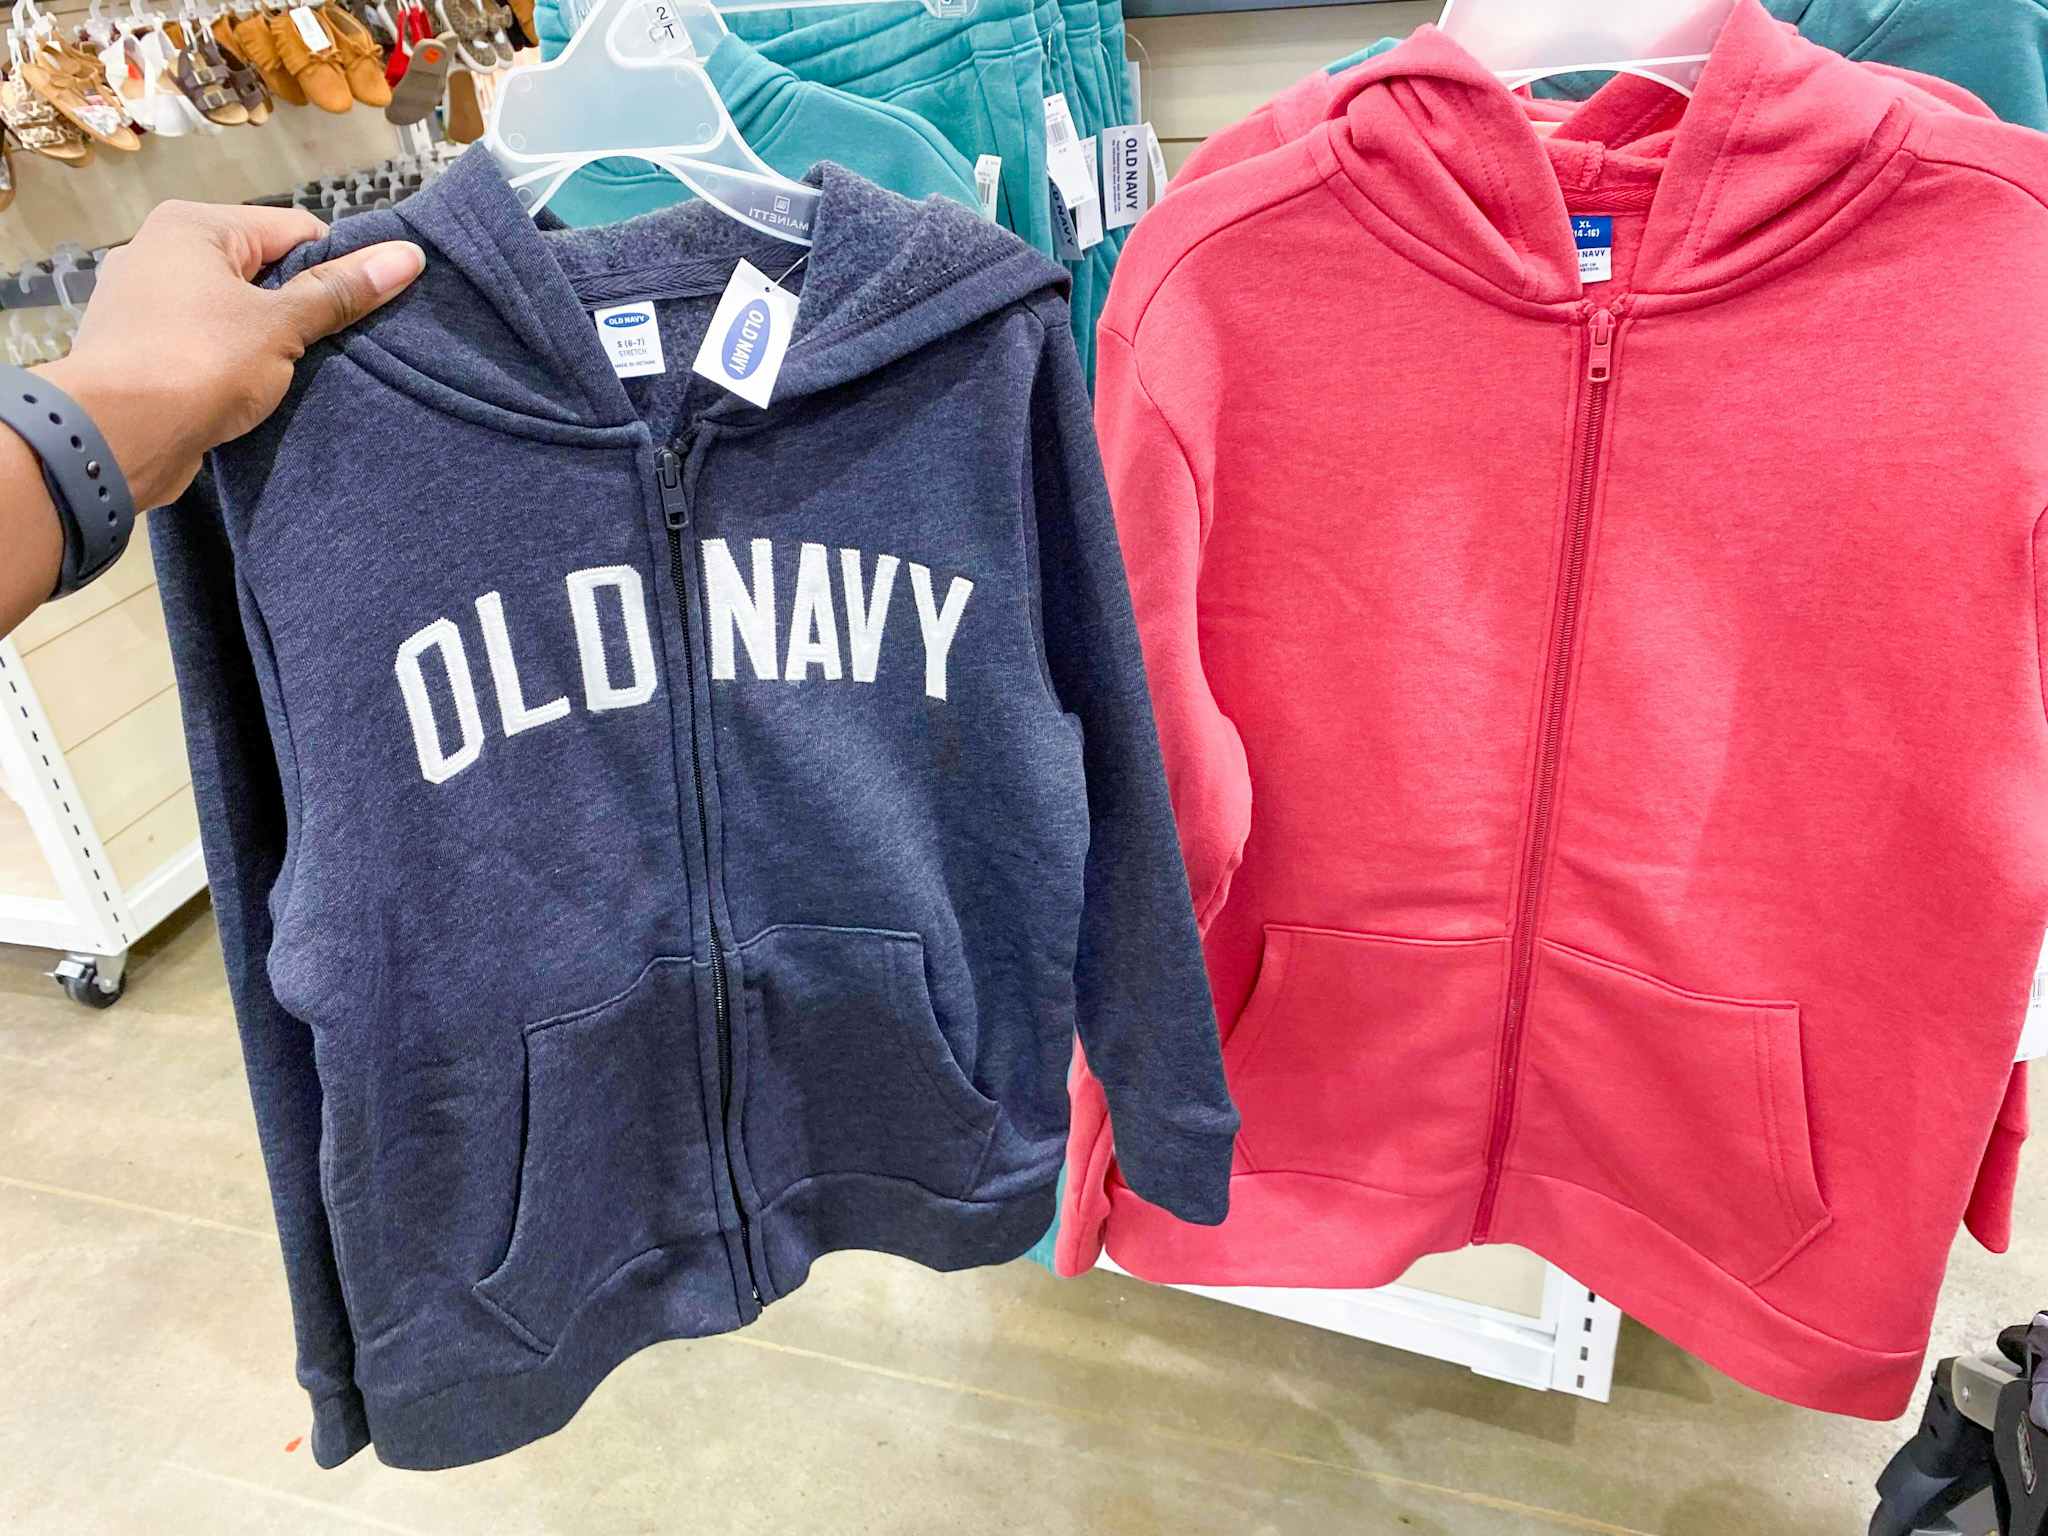 old navy boys sweatshirts hoodies in store image 2021